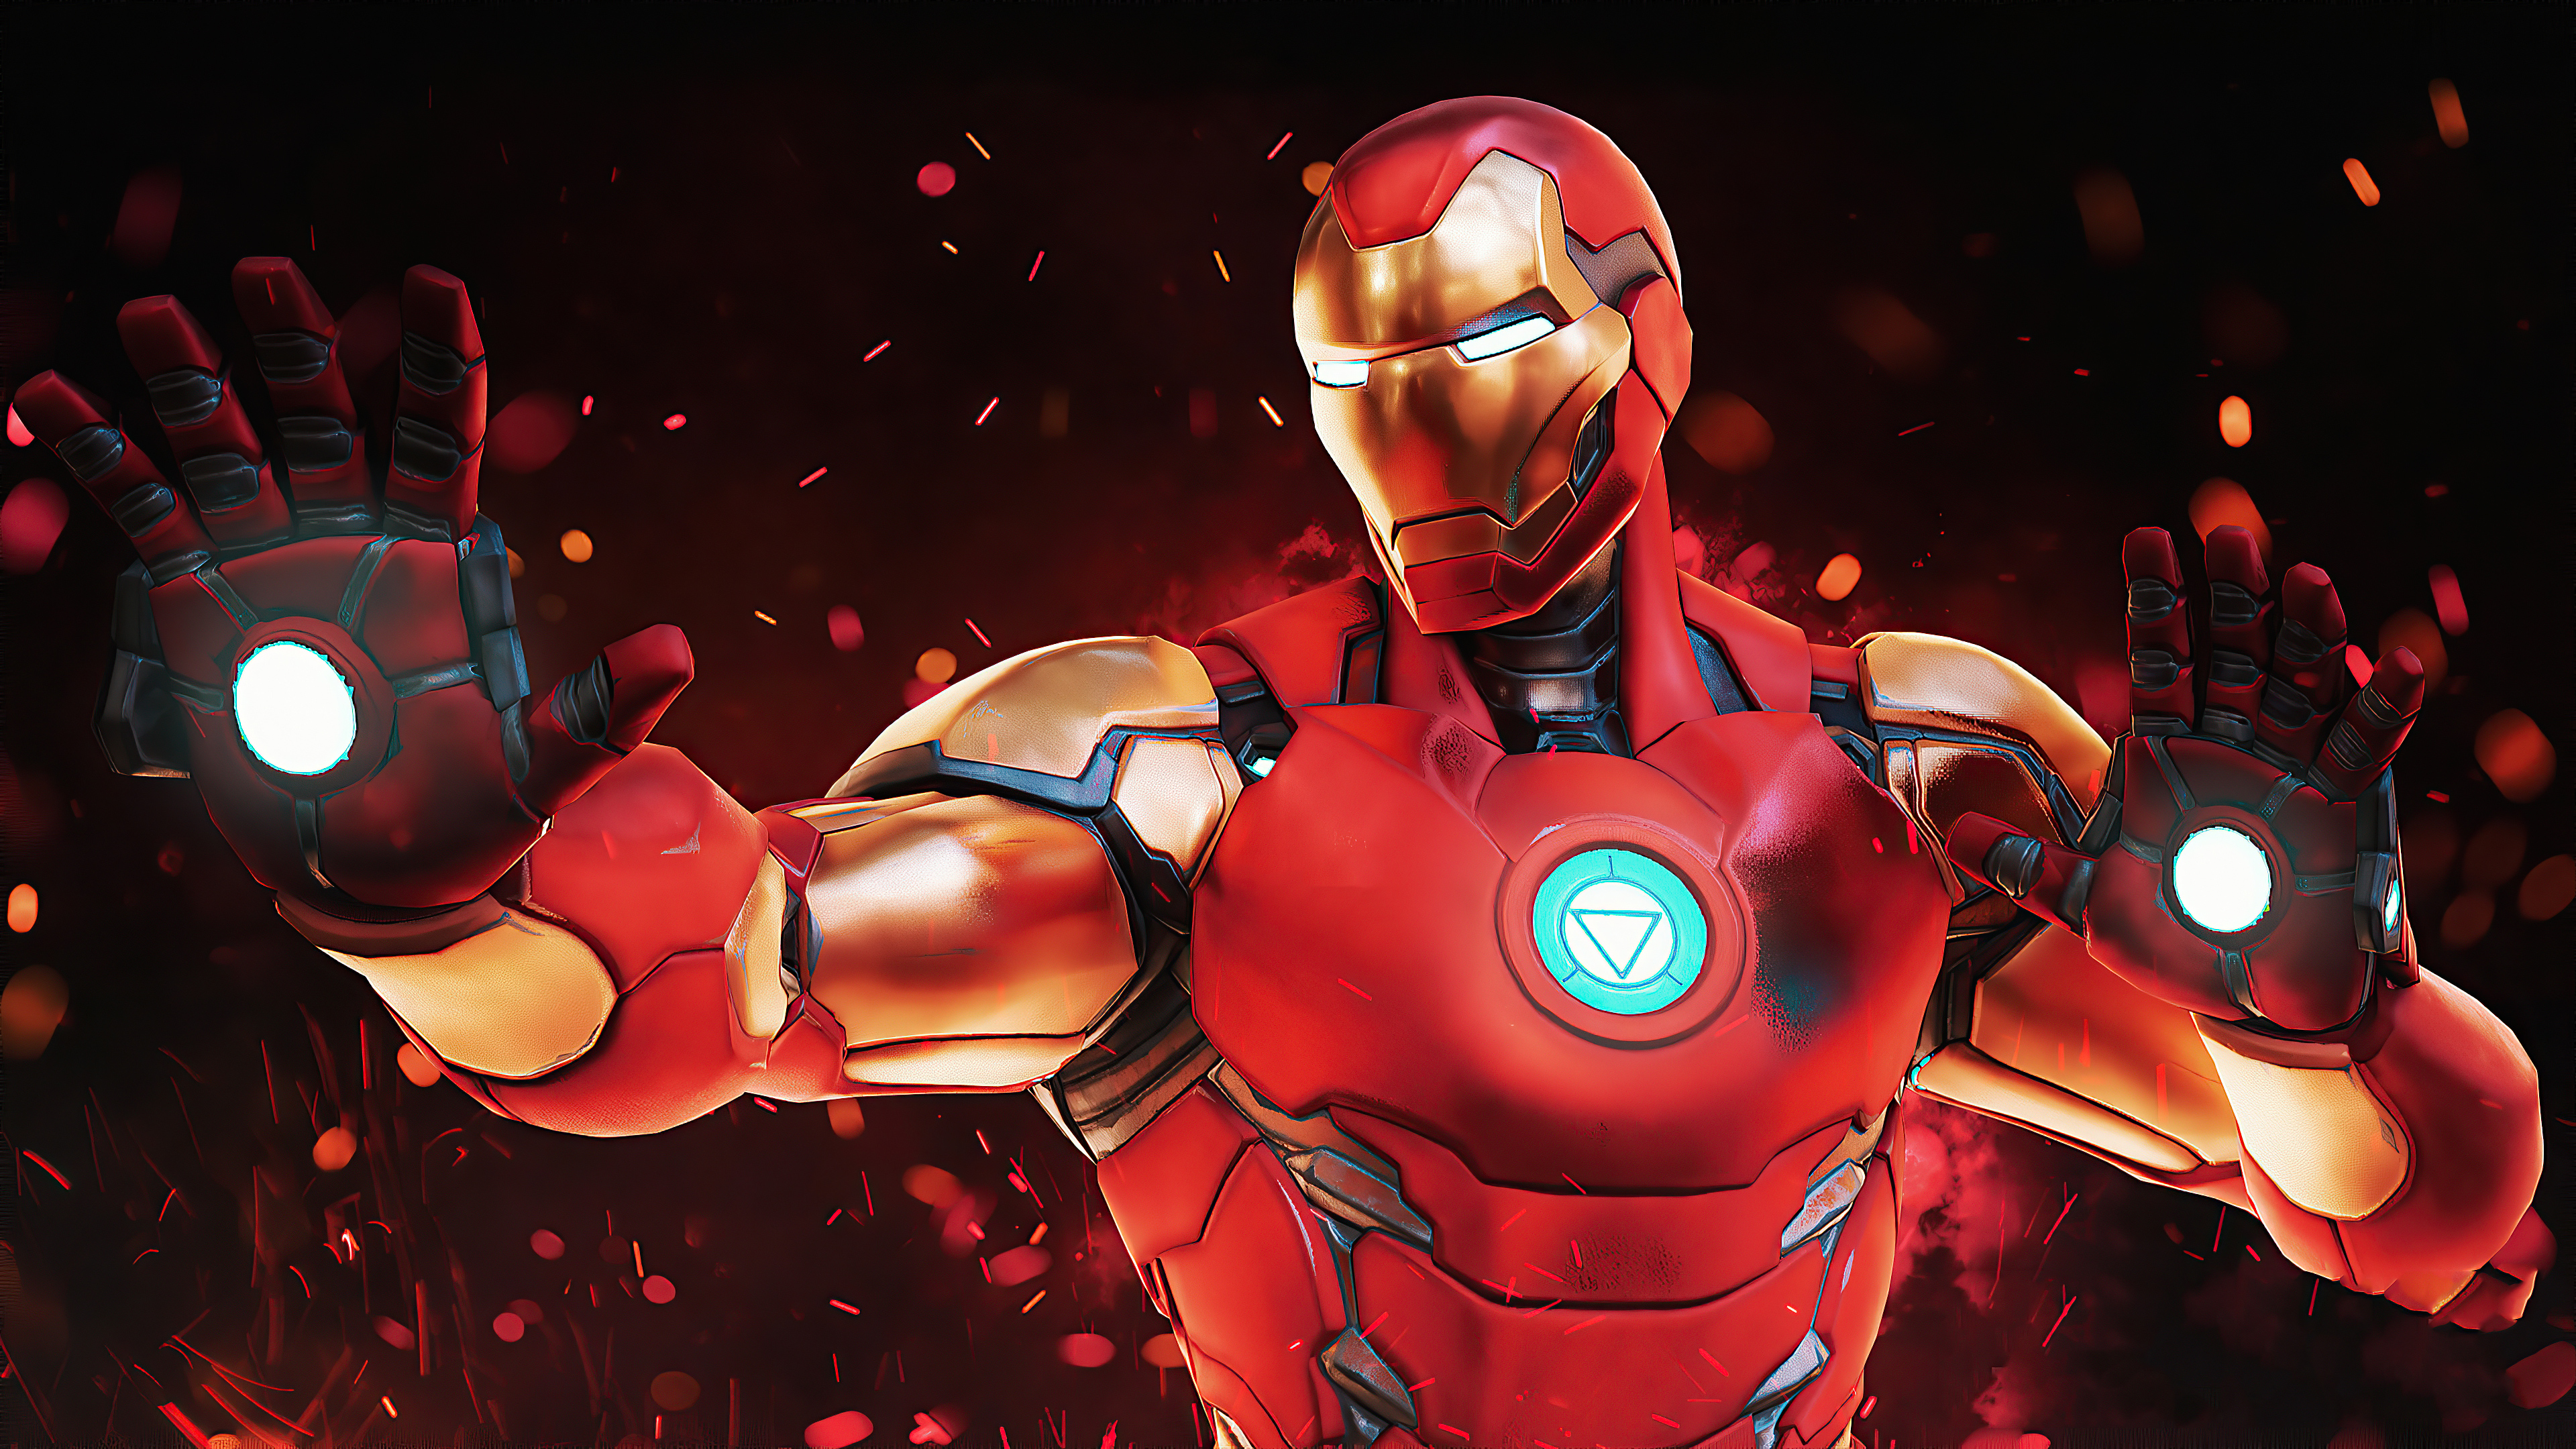 230+ 4K Iron Man Fondos de pantalla | Fondos de Escritorio